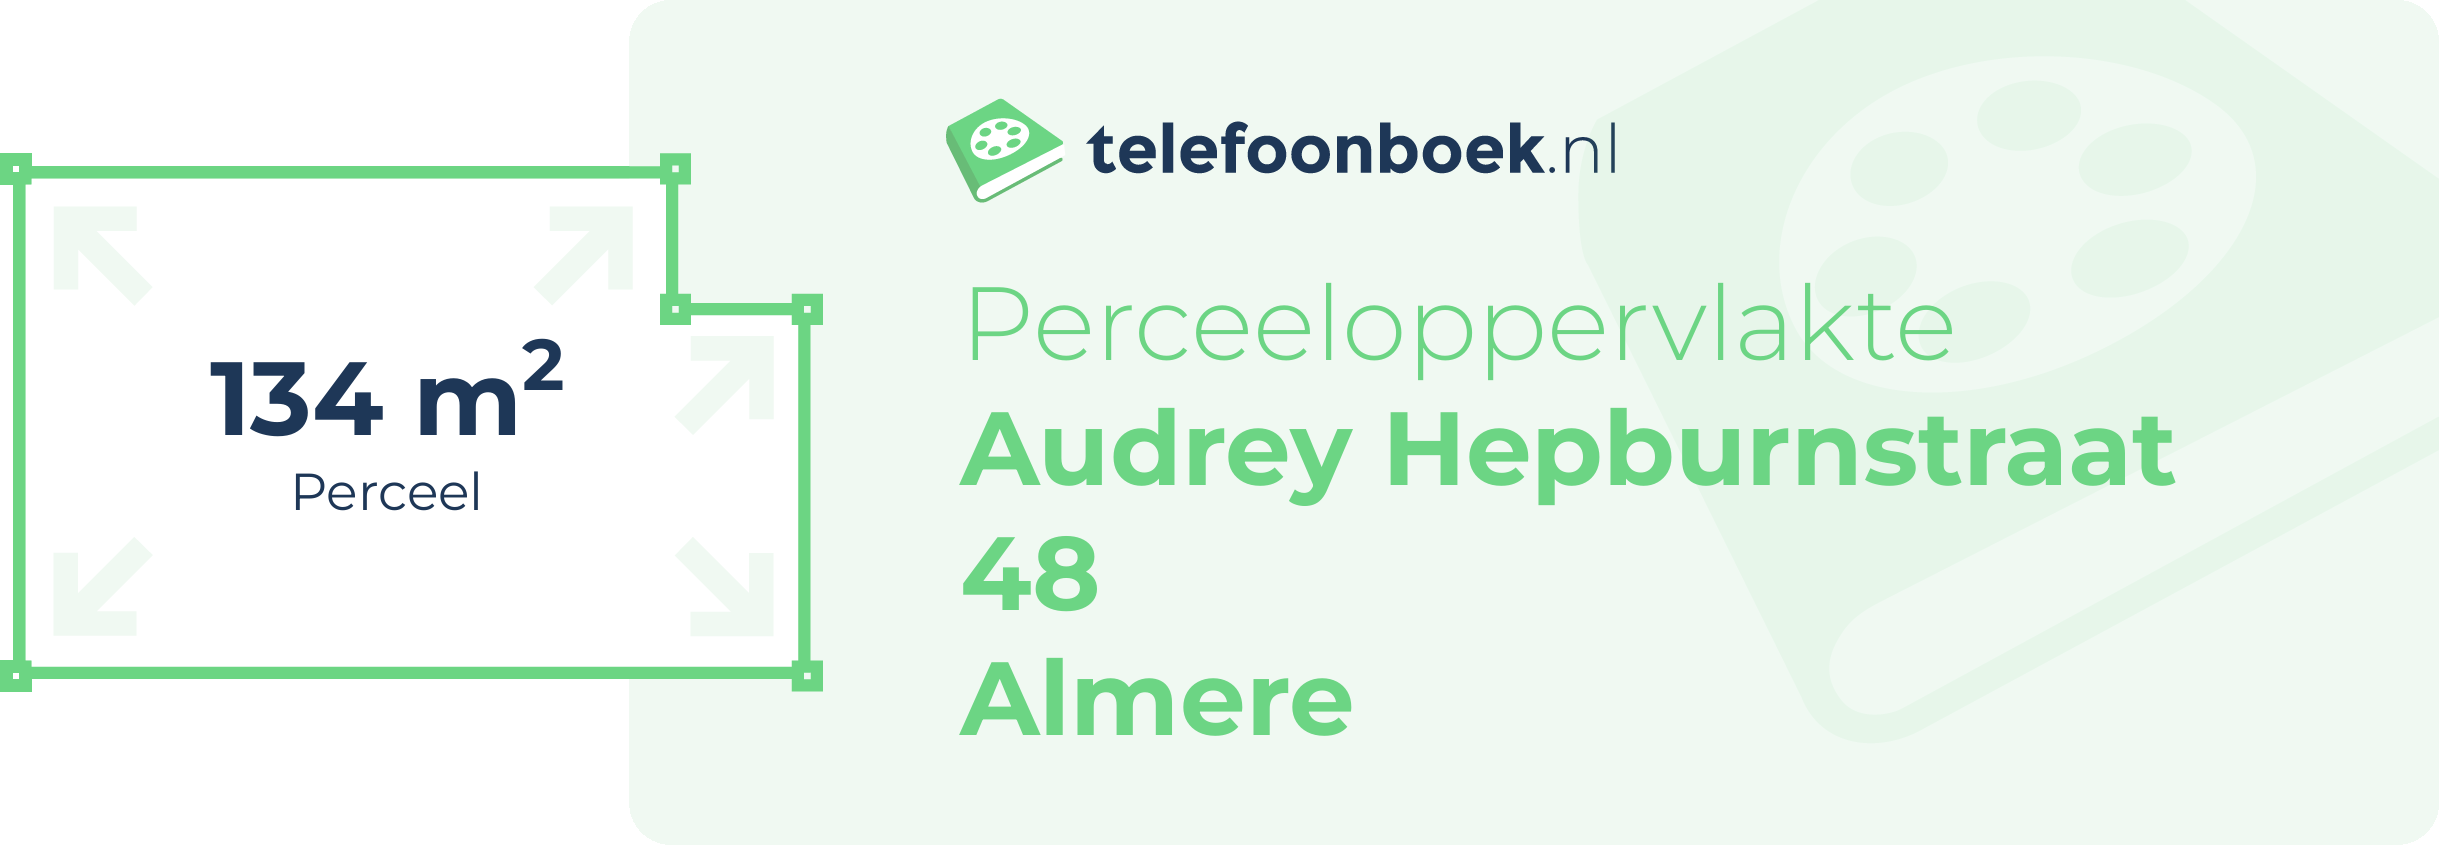 Perceeloppervlakte Audrey Hepburnstraat 48 Almere